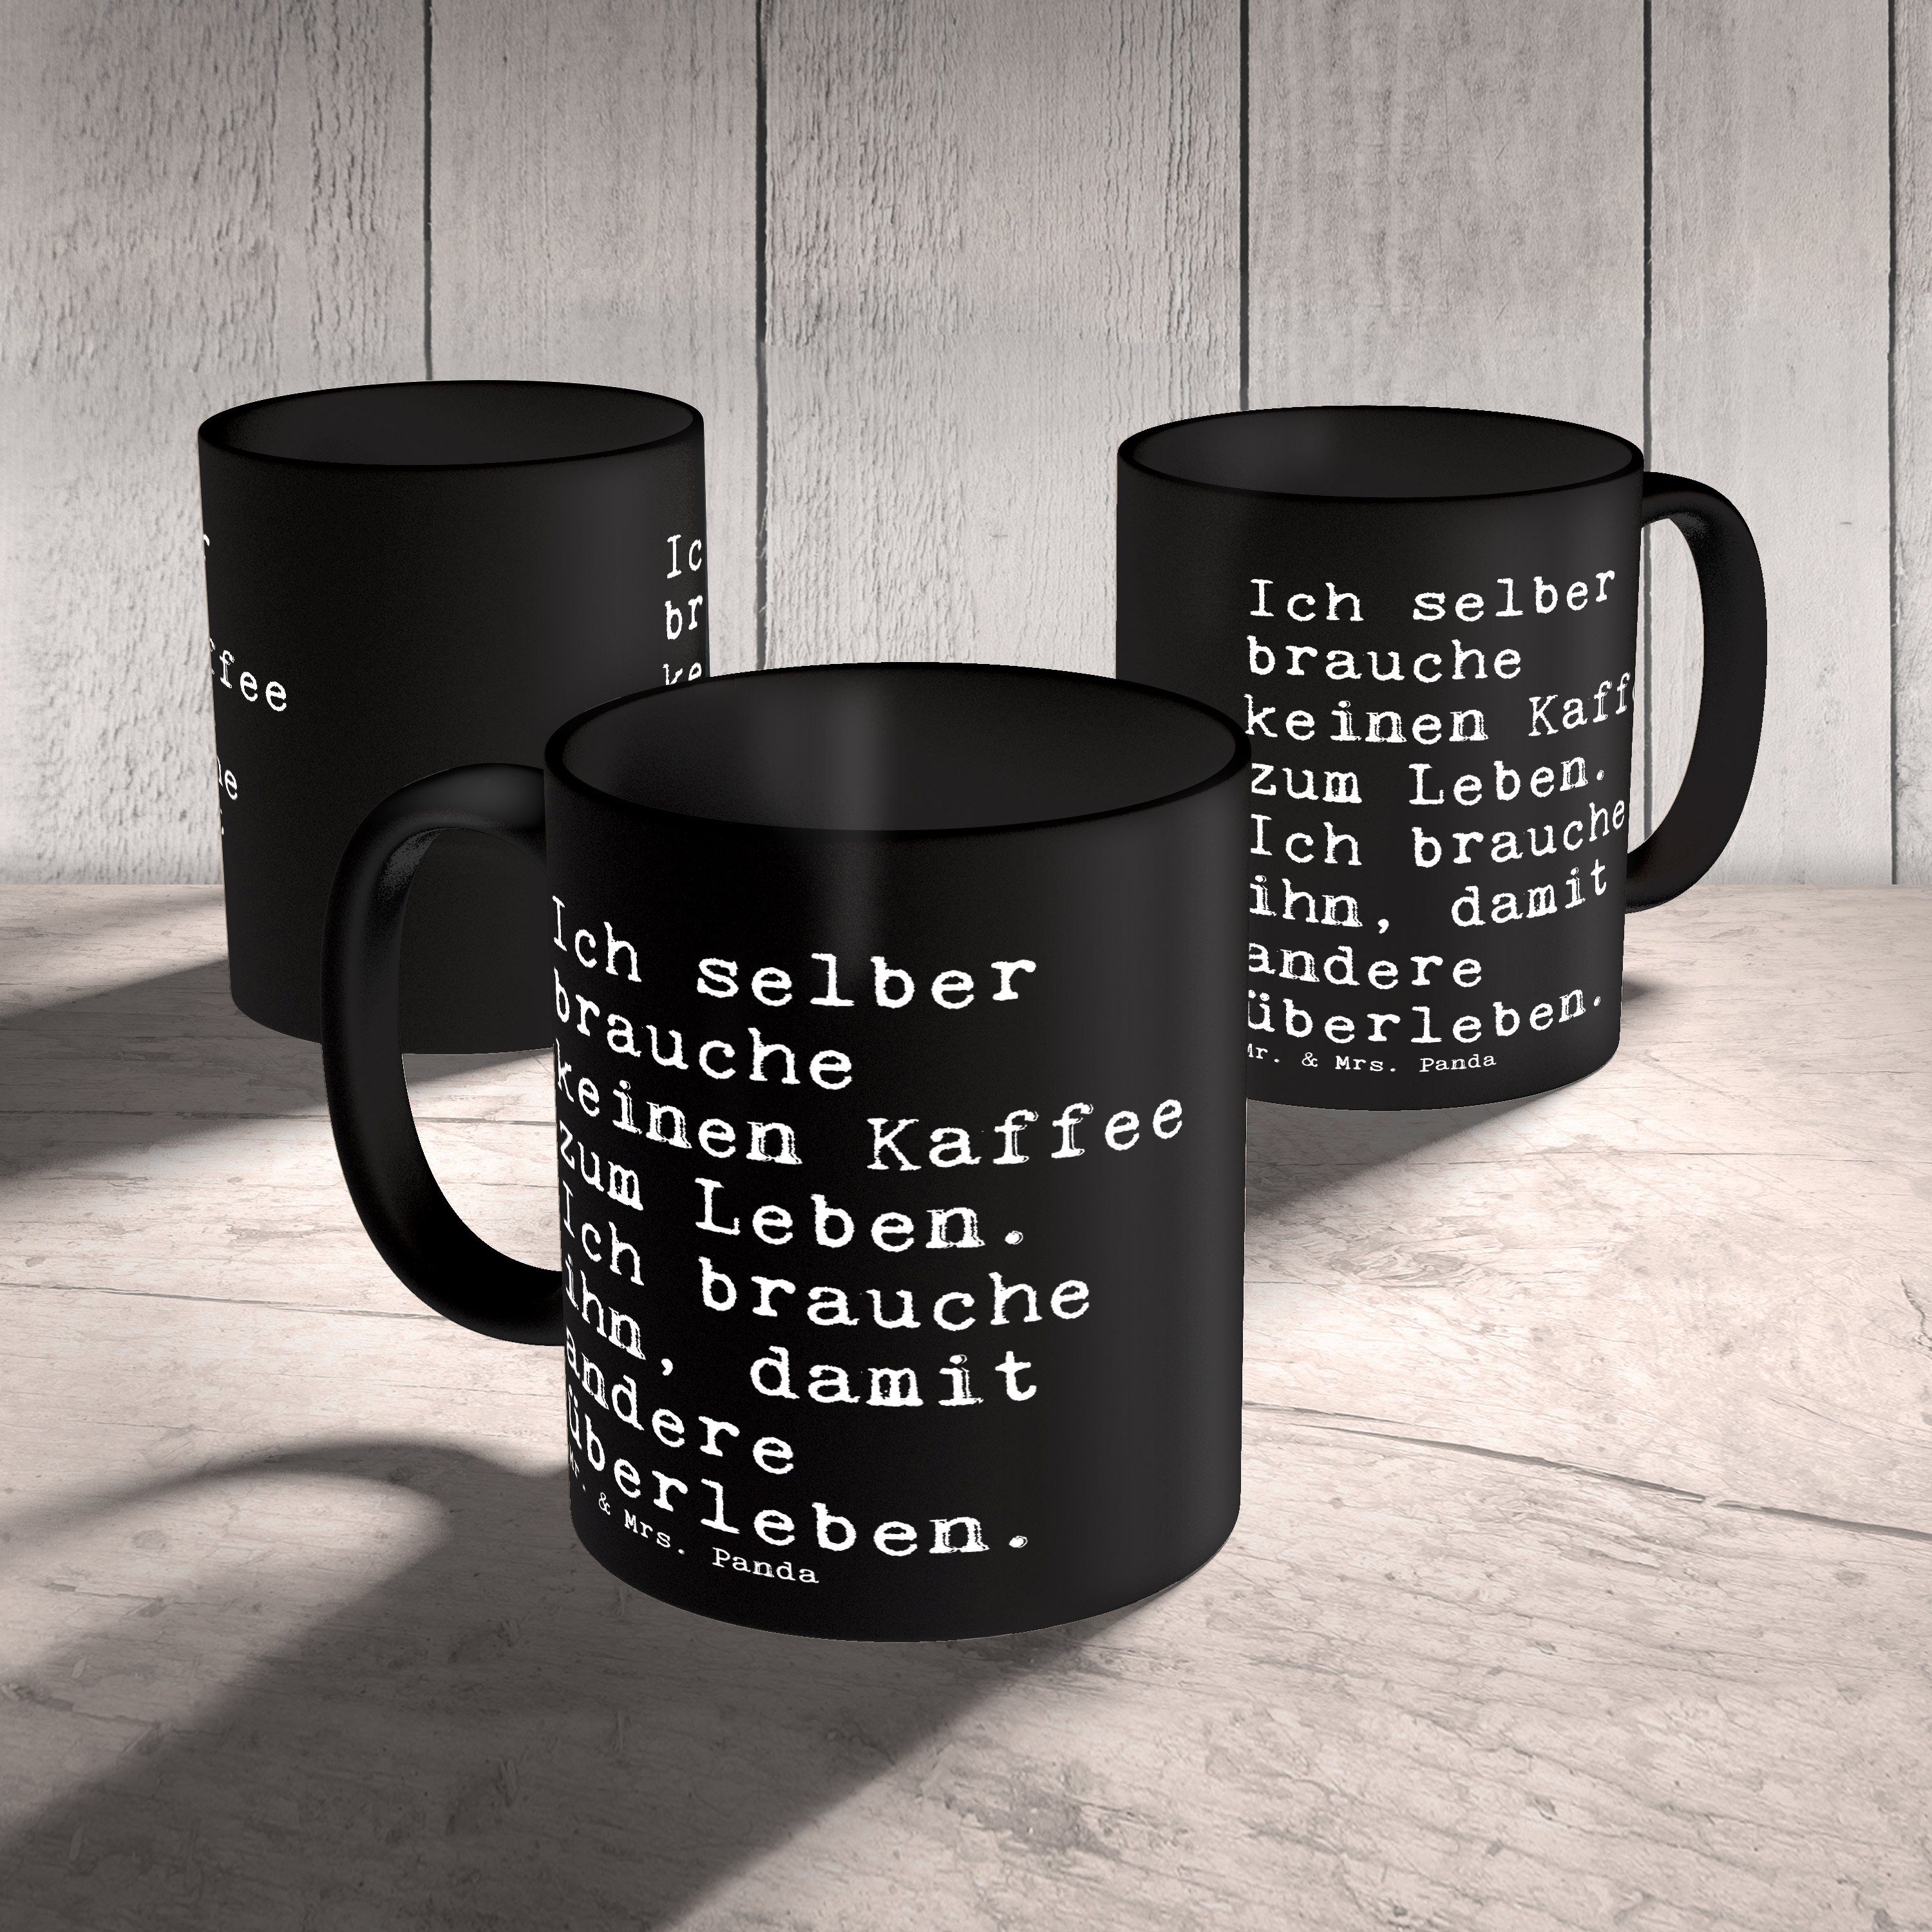 Spruch, Ich Tasse Schwarz Keramik - brauche Spr, - Mrs. & Panda Schwarz Spruch Mr. Geschenk, selber keinen...